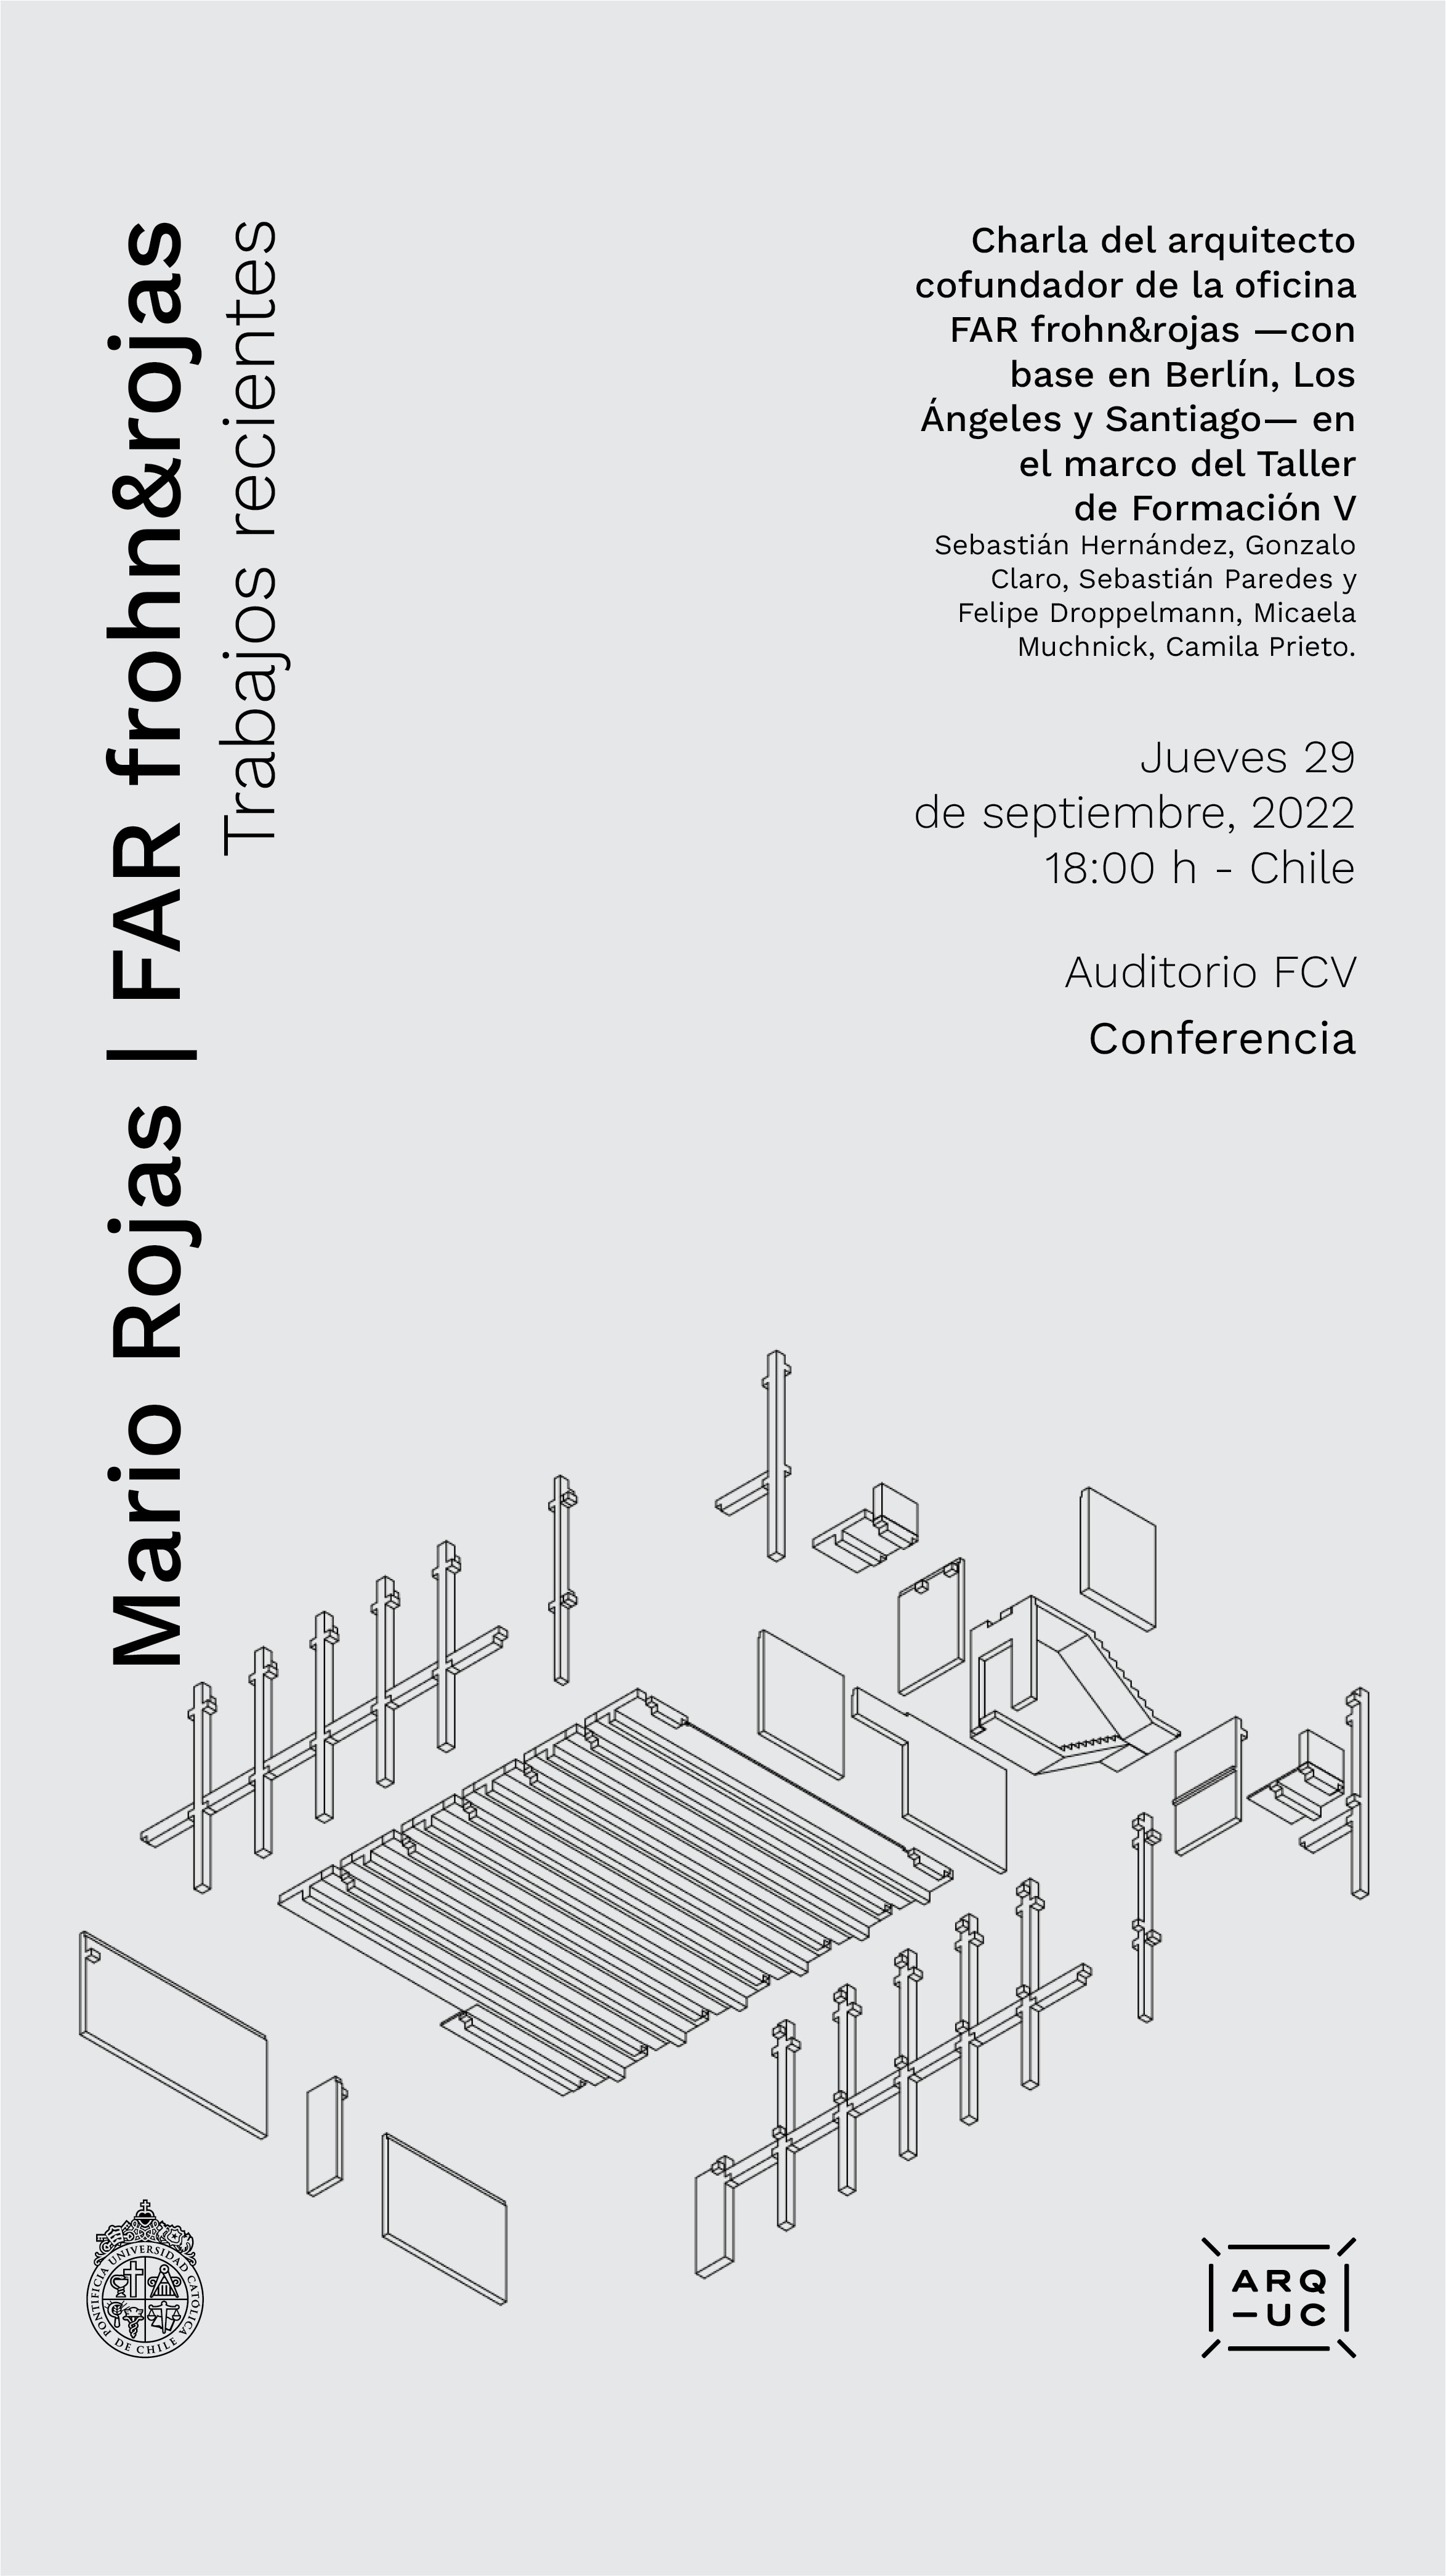 2022-09-21_Afiche_conferencia_Mario_Rojas___Jueves_29_de_septiembre_2022.jpg